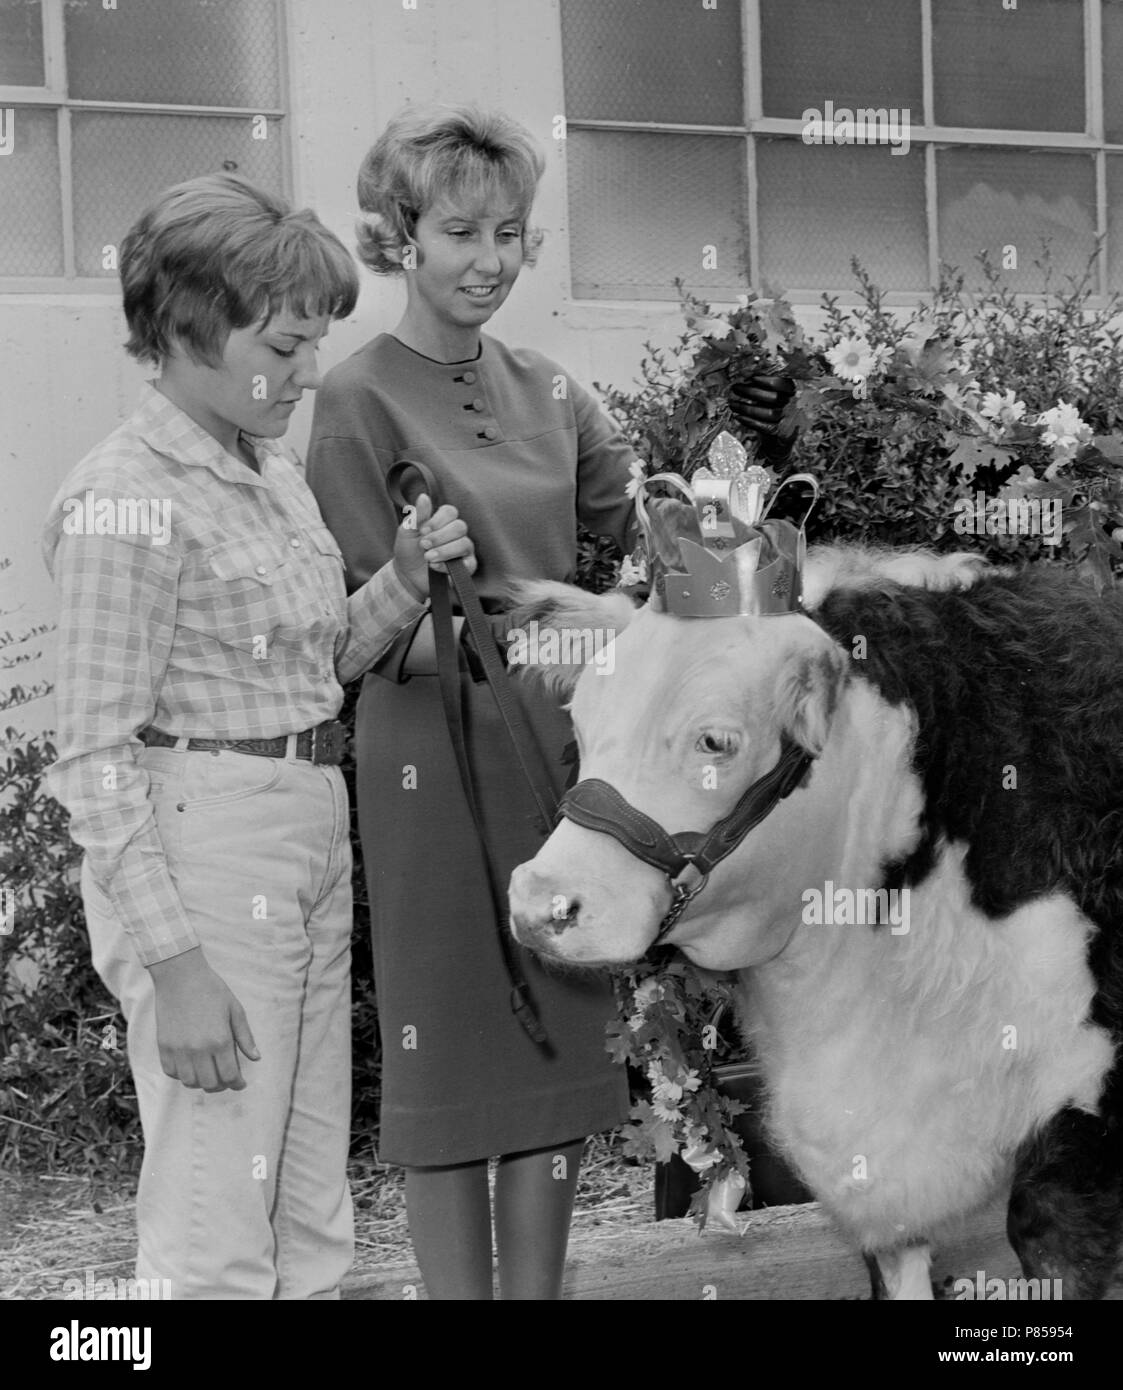 Ein junges Mädchen und ihre Mutter stand mit Krone - Tragen von Kuh zu einem fairen Wettbewerb in Kansas, Ca. 1965. Stockfoto